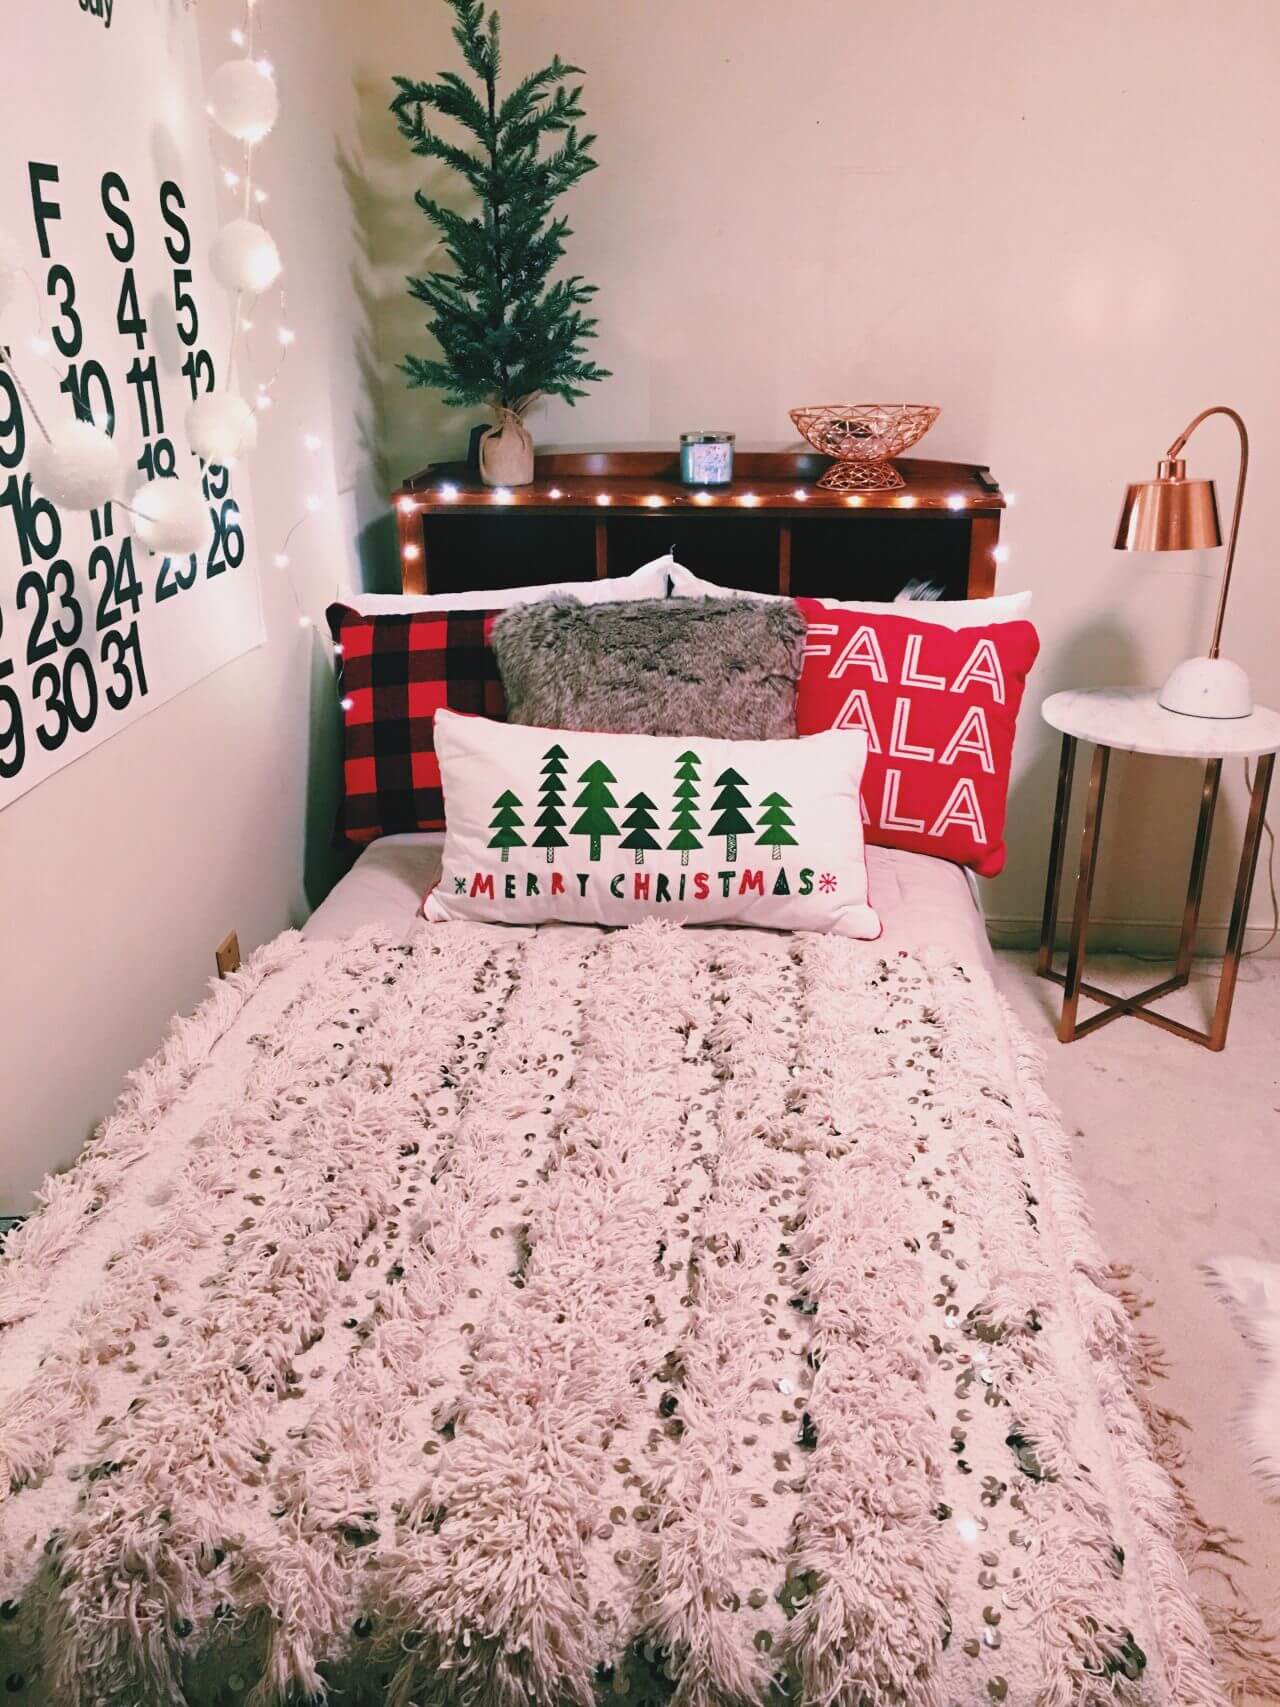 Christmas single bedroom decor